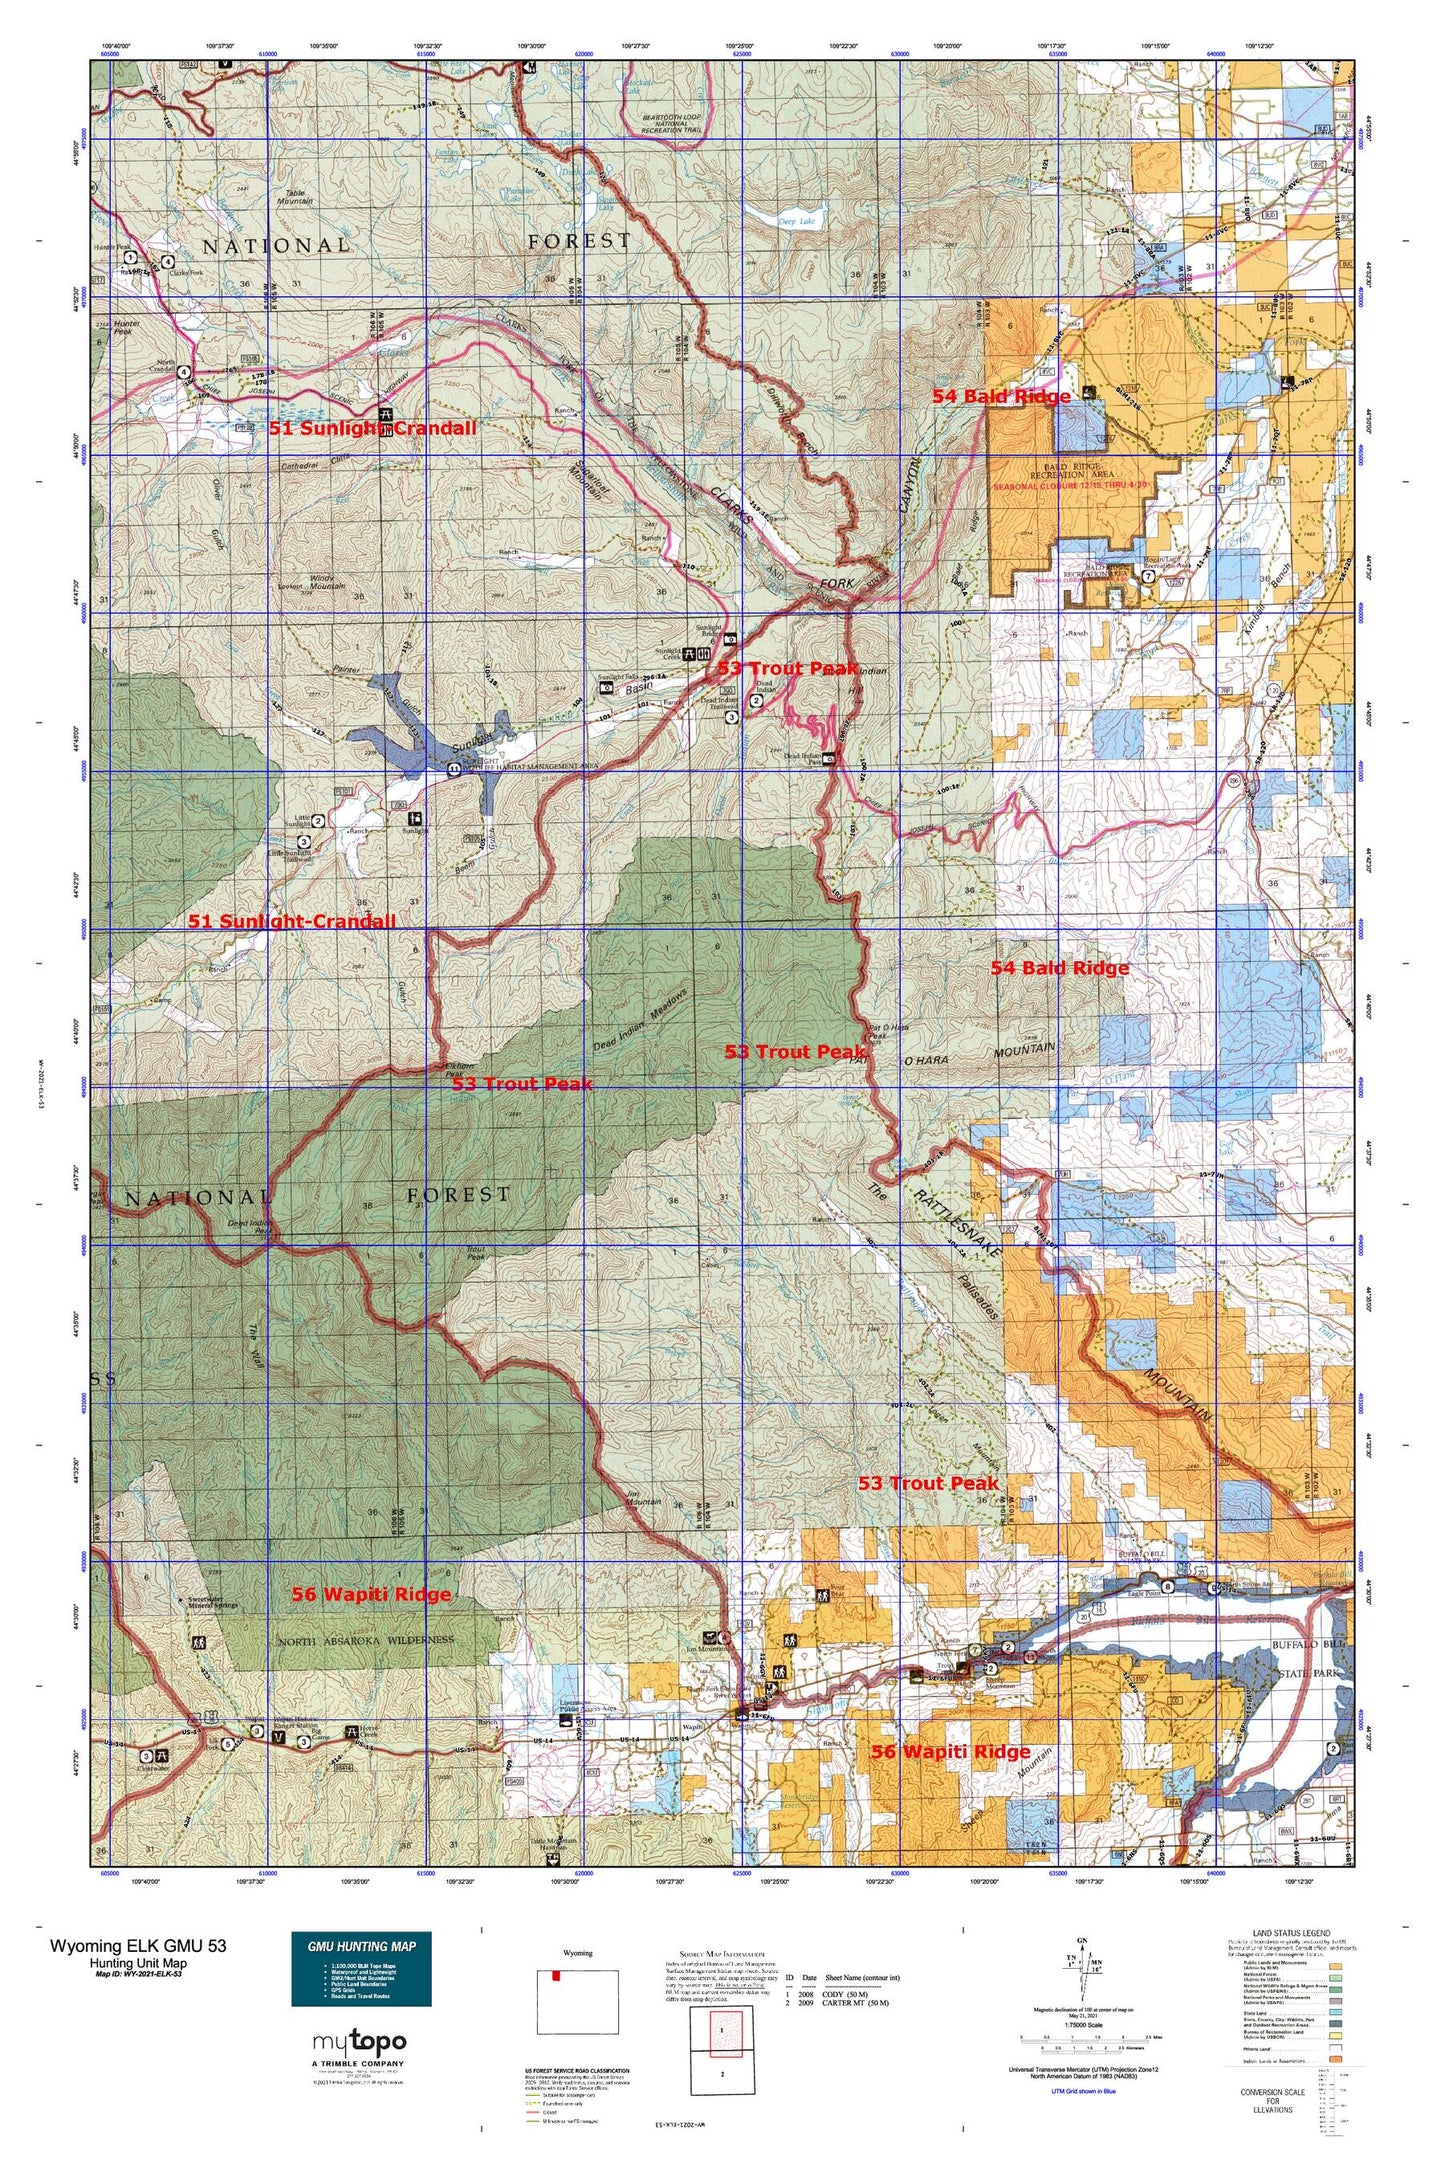 Wyoming Elk GMU 53 Map Image